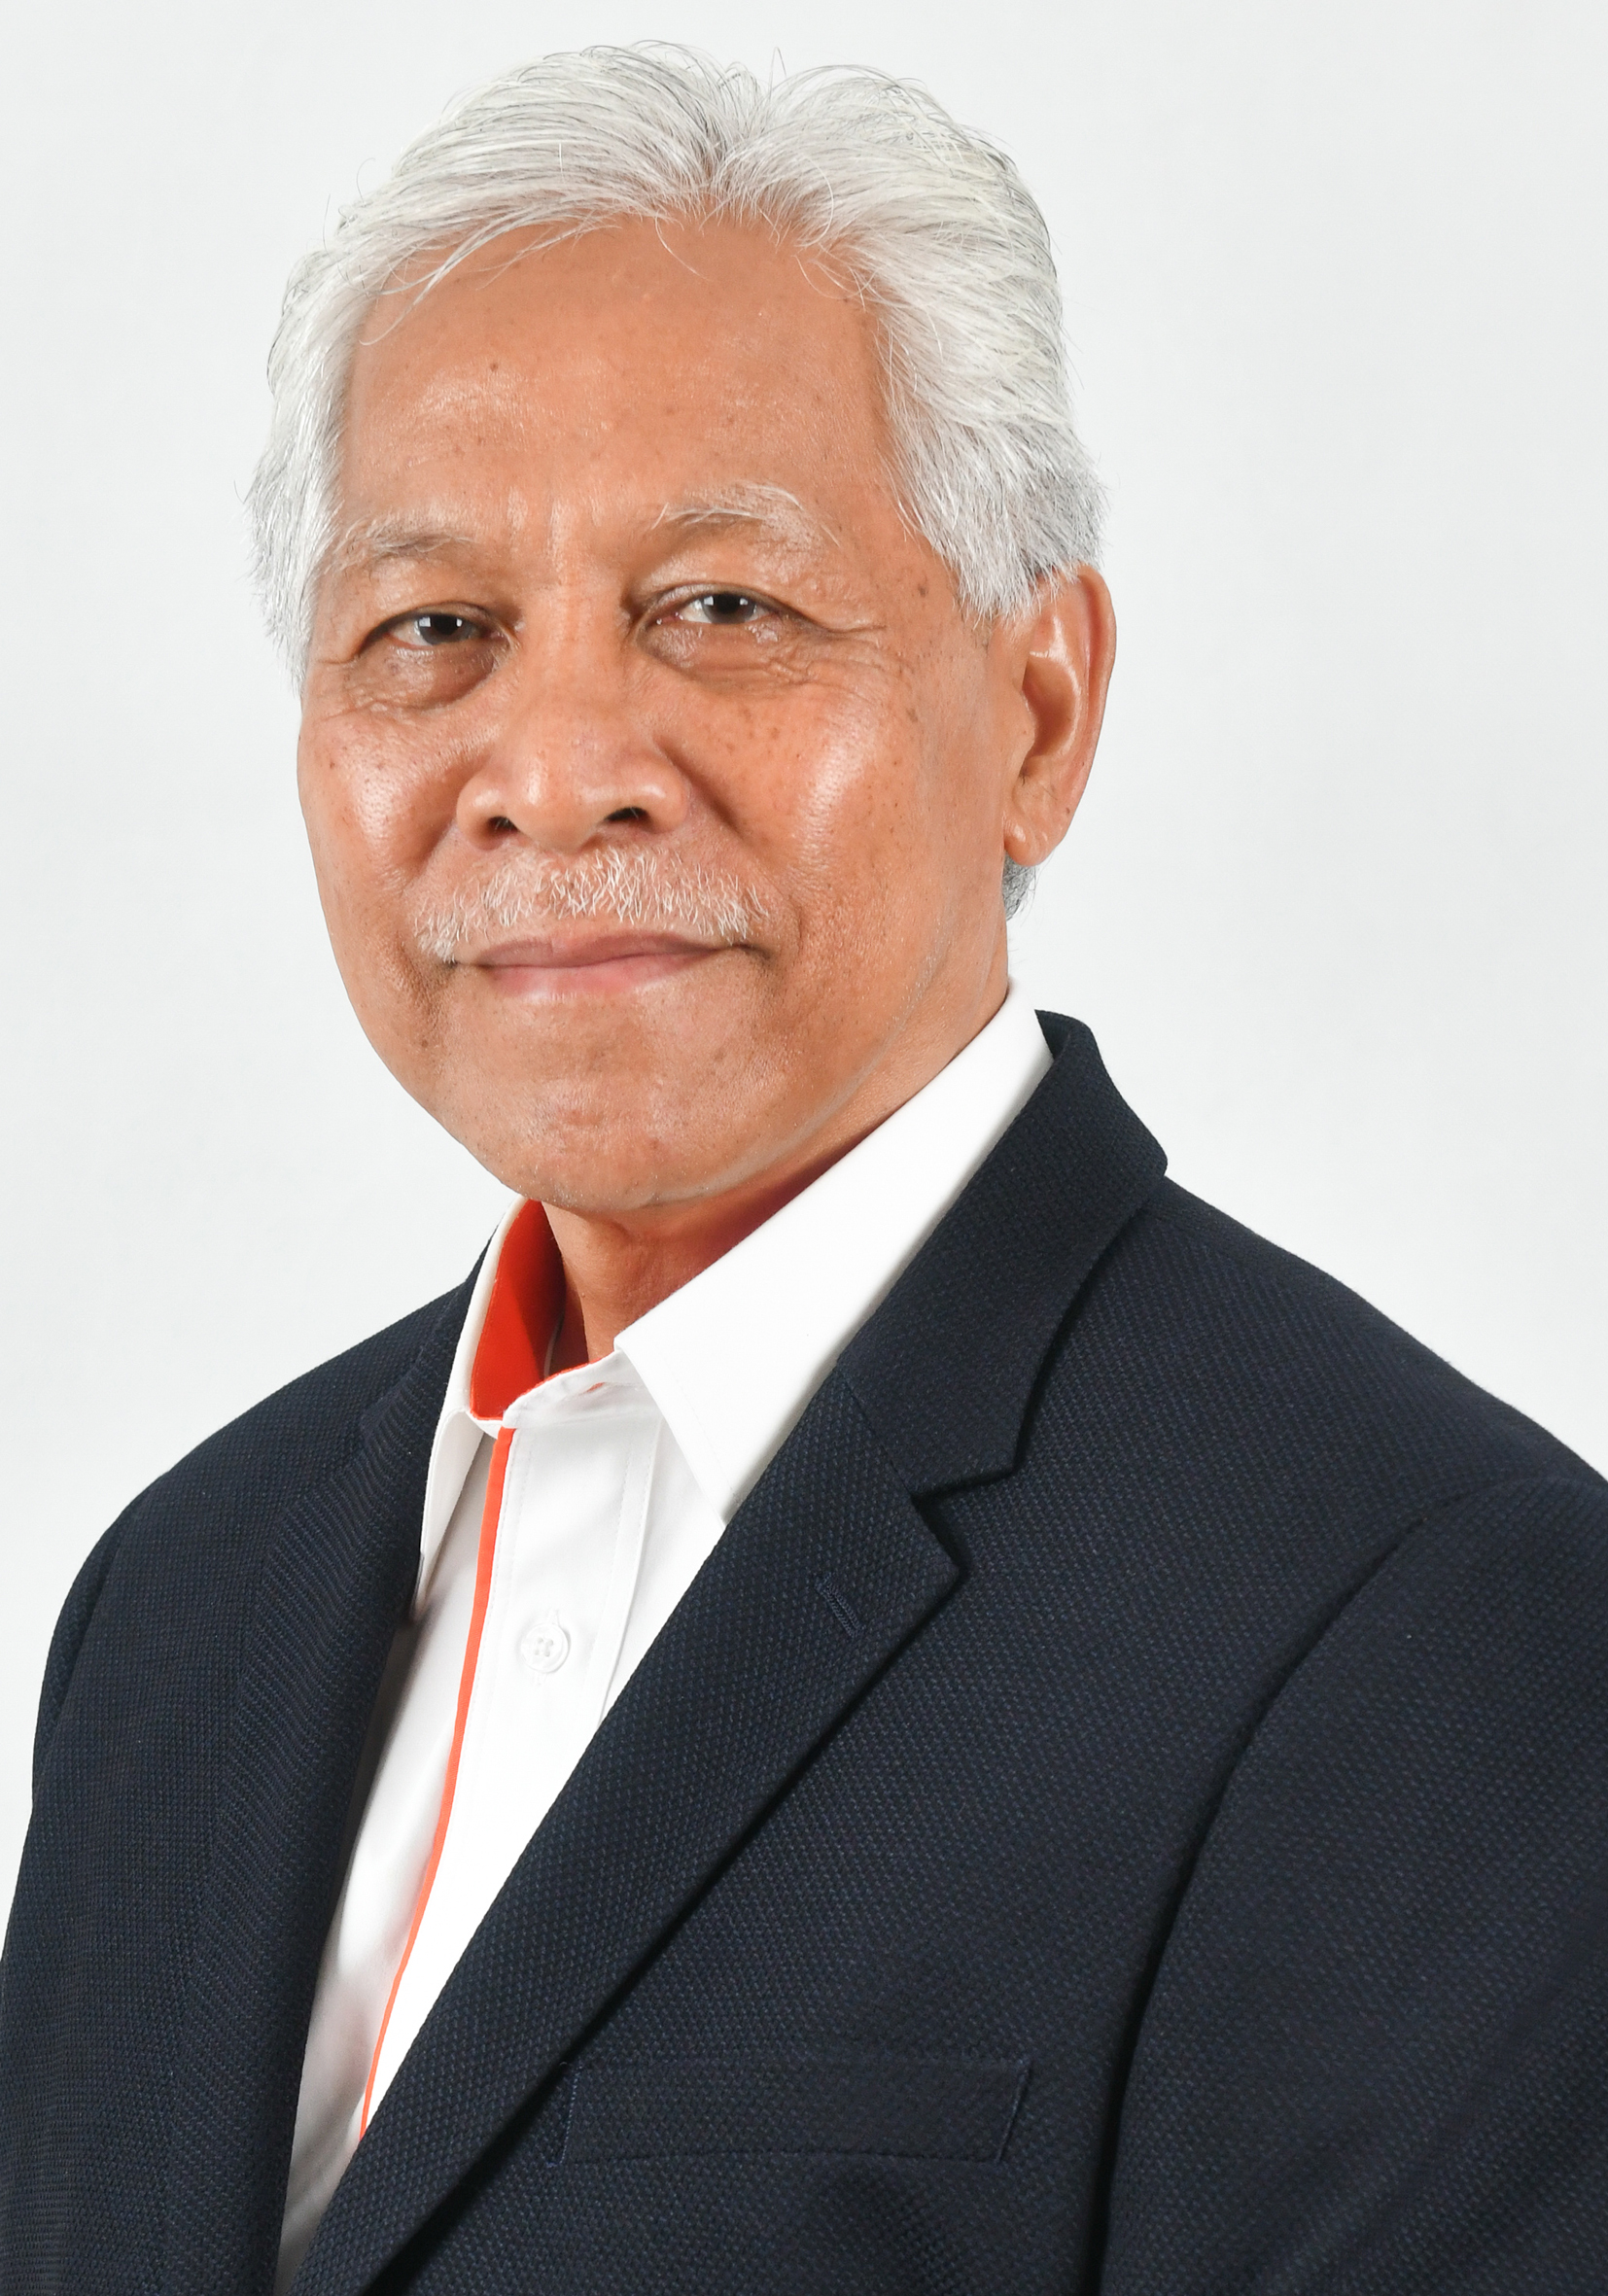 YB Dato' Seri Haji Idris Bin Jusoh